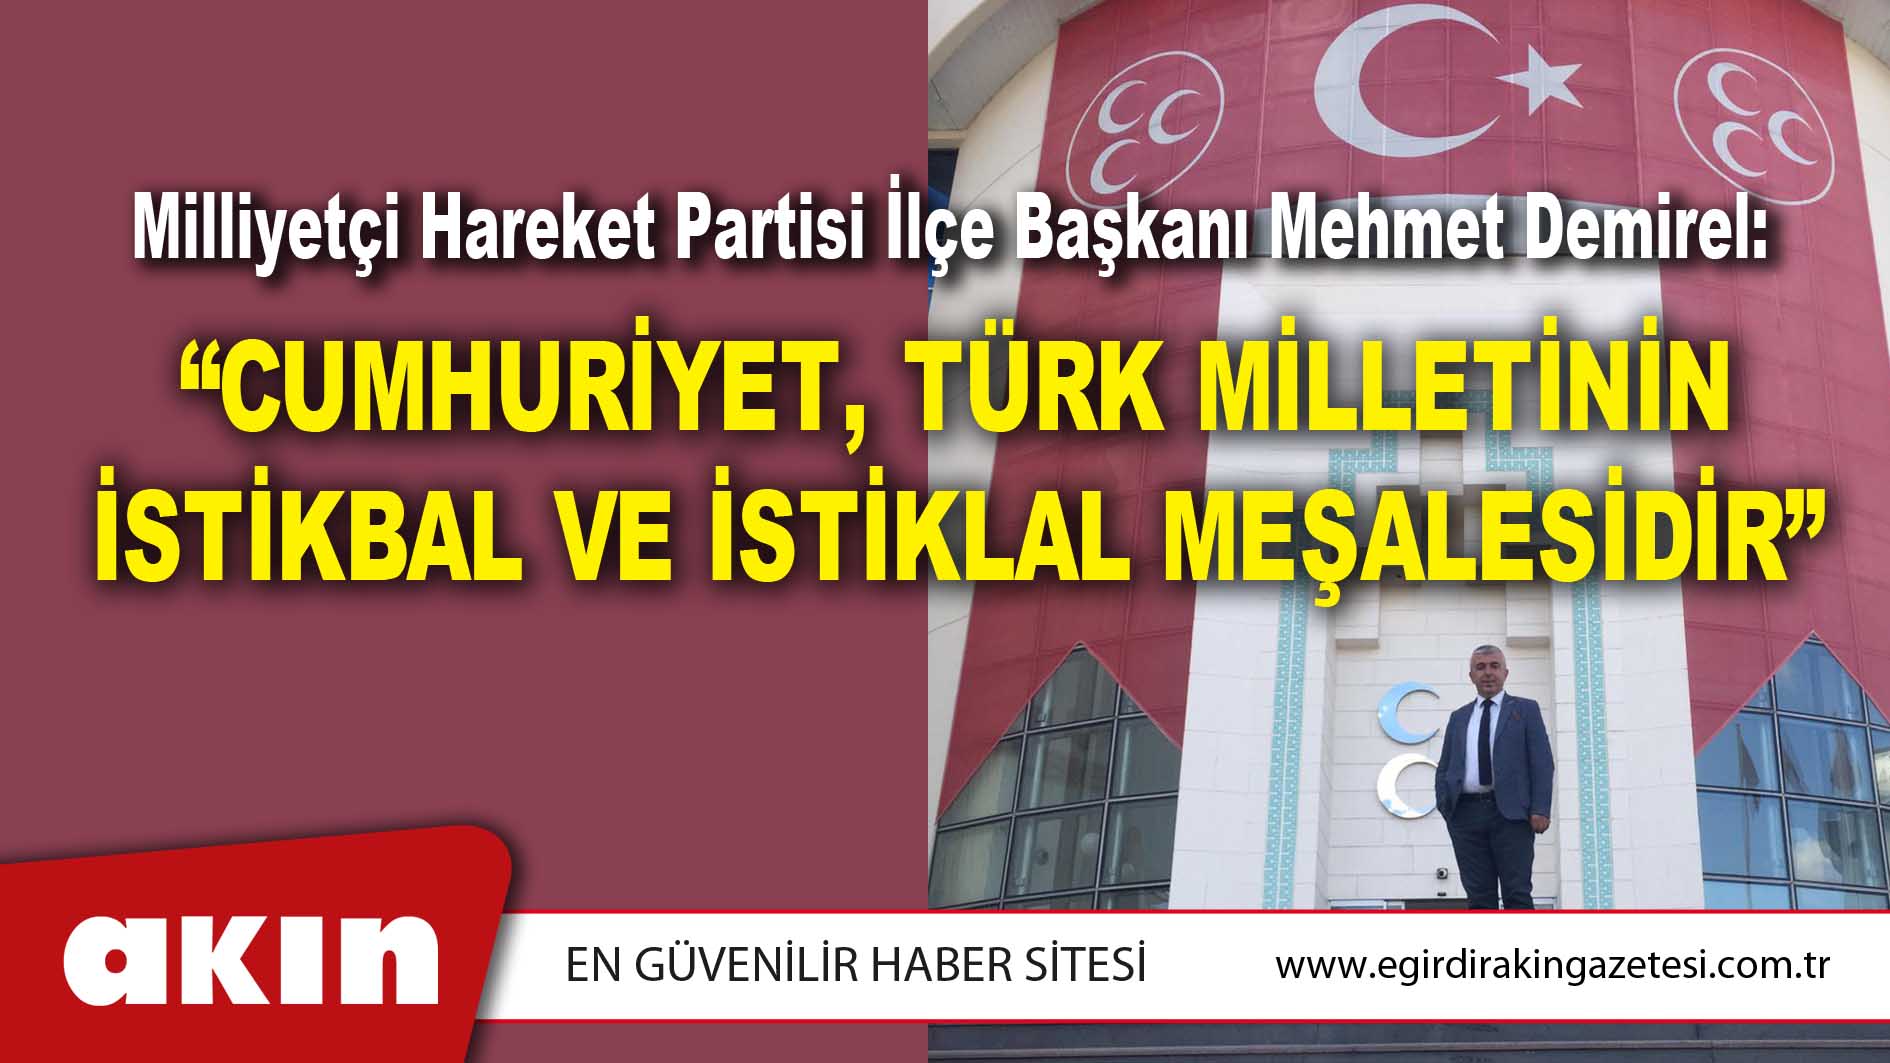 Milliyetçi Hareket Partisi İlçe Başkanı Mehmet Demirel: “CUMHURİYET, TÜRK MİLLETİNİN İSTİKBAL VE İSTİKLAL MEŞALESİDİR”